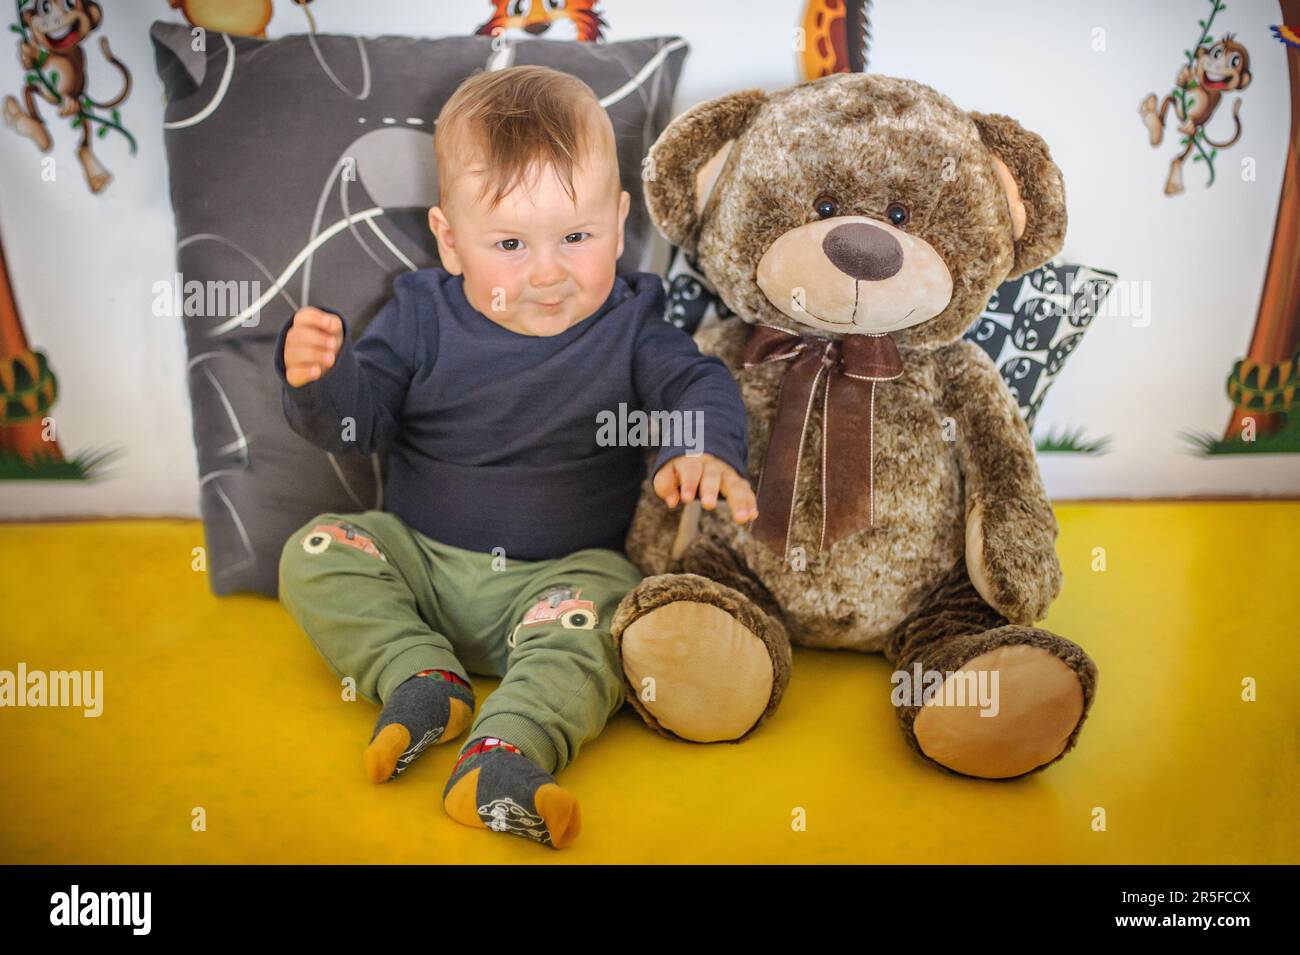 Portrait d'un bébé garçon mignon et souriant assis avec son ours en peluche bien-aimé. La joie et le bonheur. Amour et émotion de famille Banque D'Images